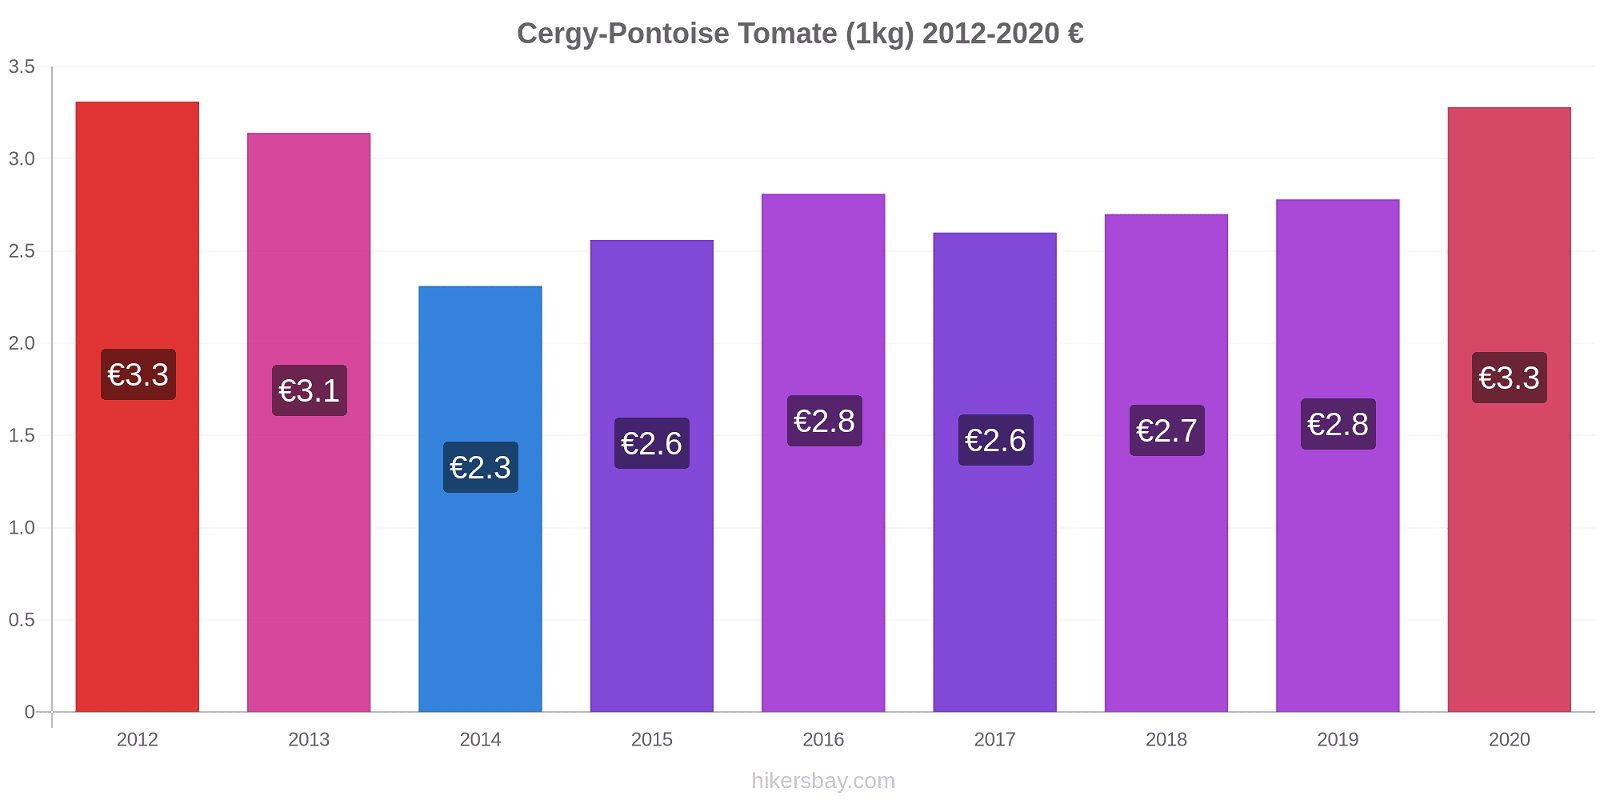 Cergy-Pontoise changements de prix Tomate (1kg) hikersbay.com